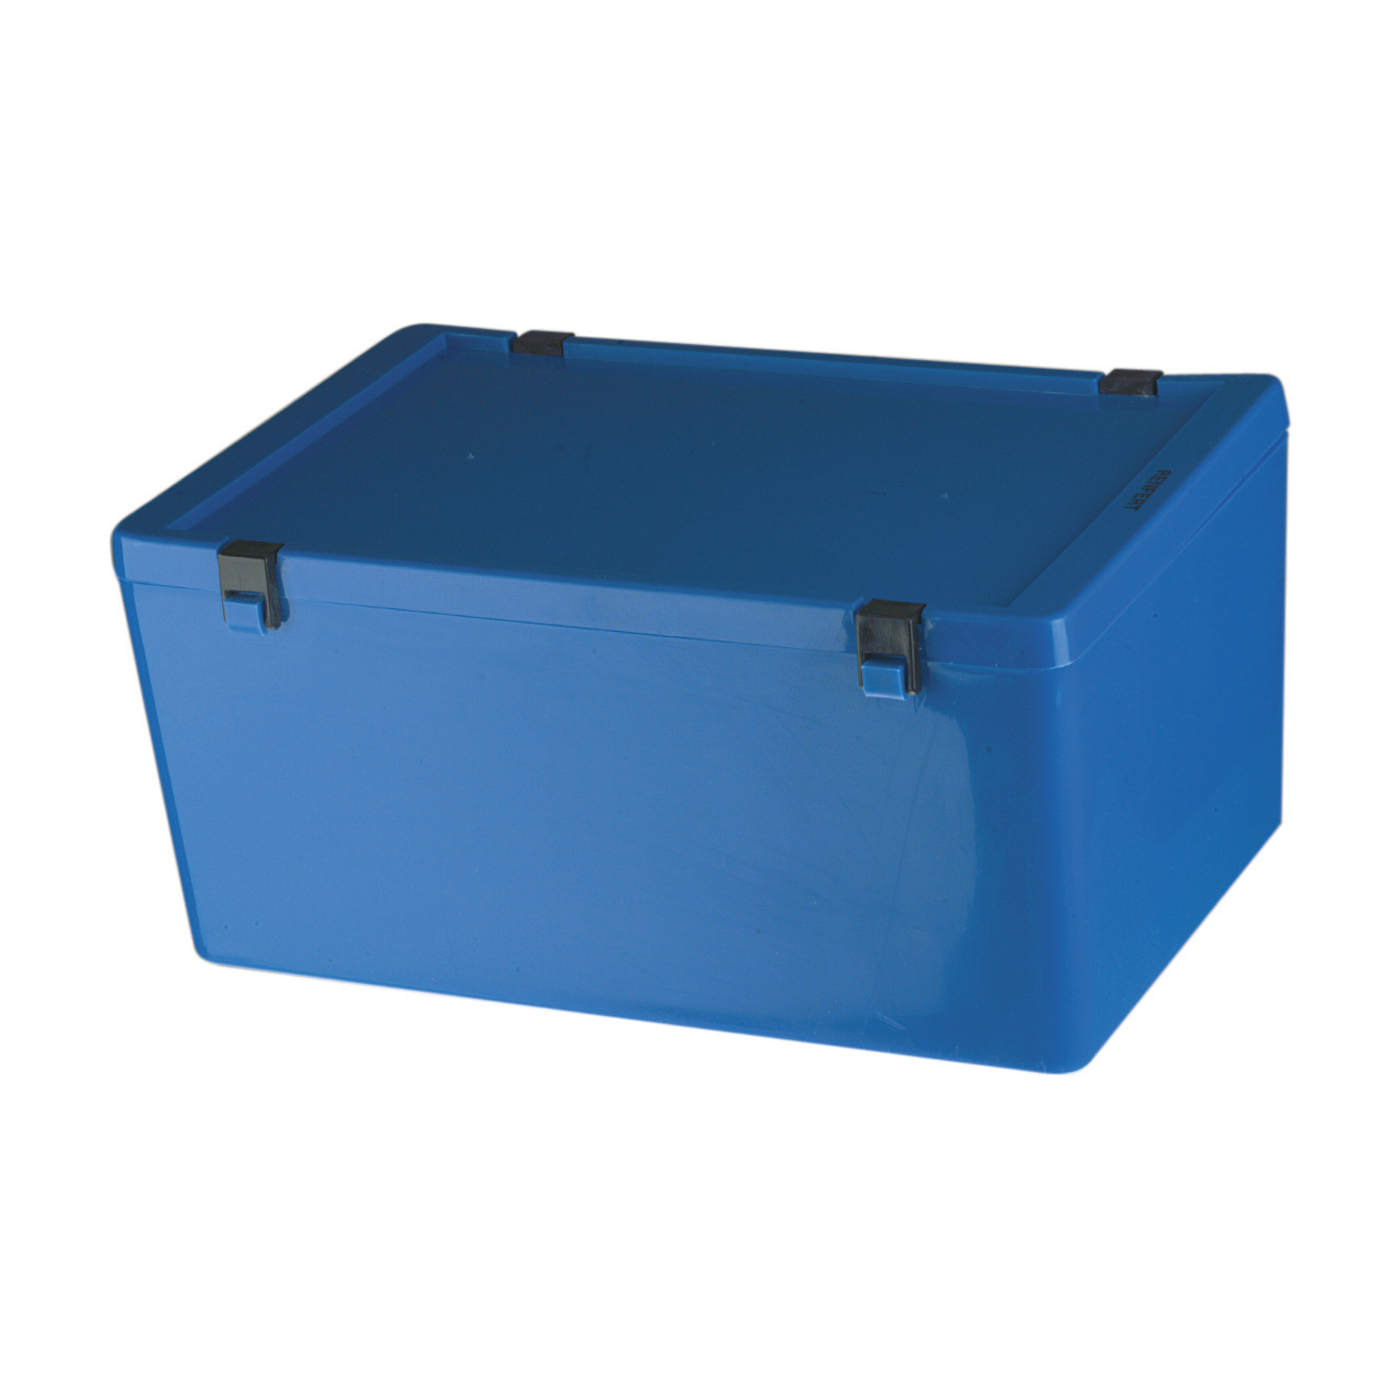 Dispatch Container, 4.5 l, Blue - 1 piece